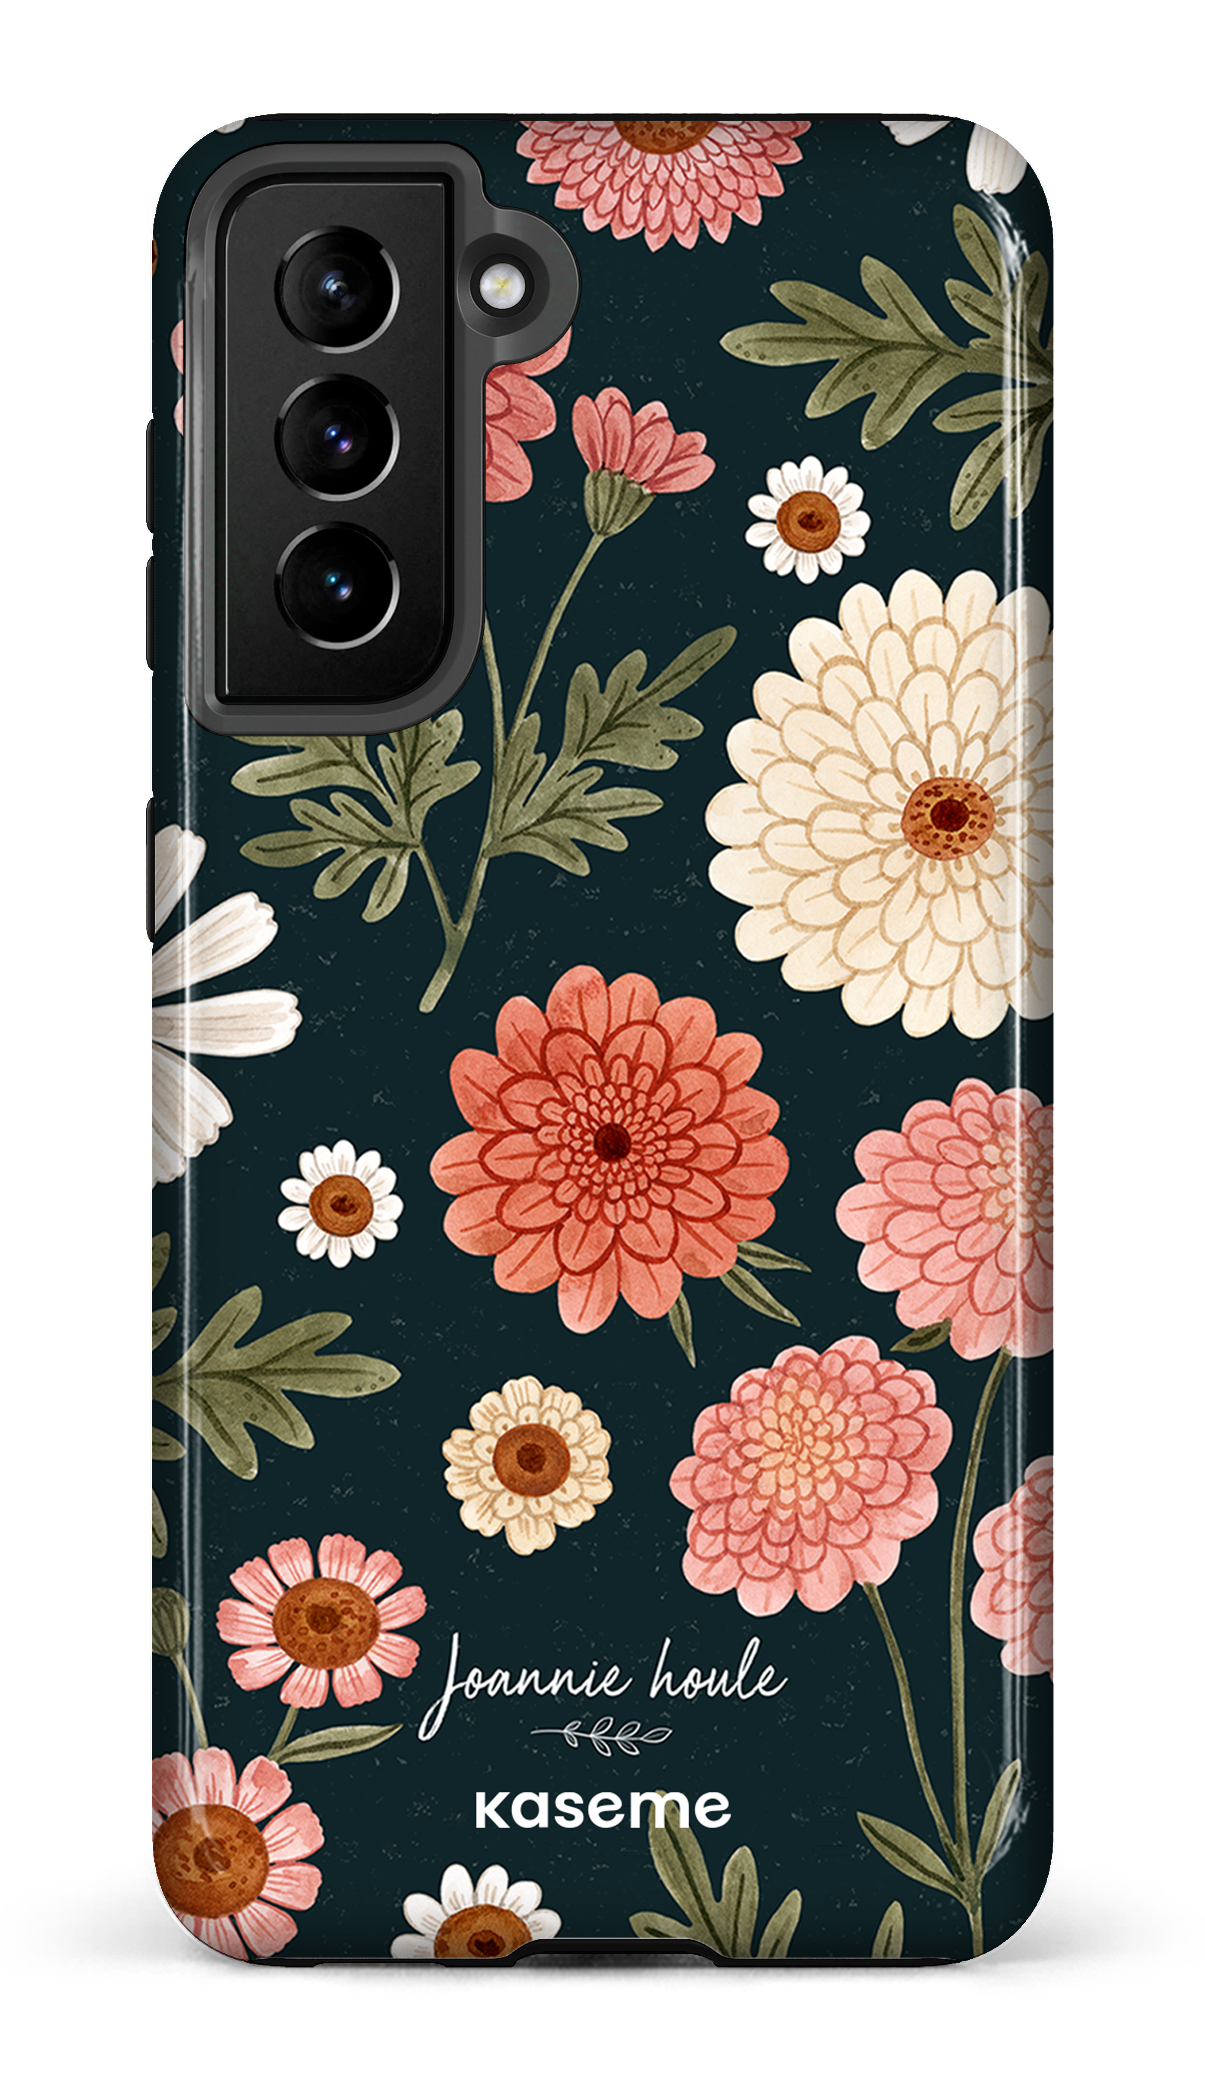 Chrysanthemums by Joannie Houle - Galaxy S21